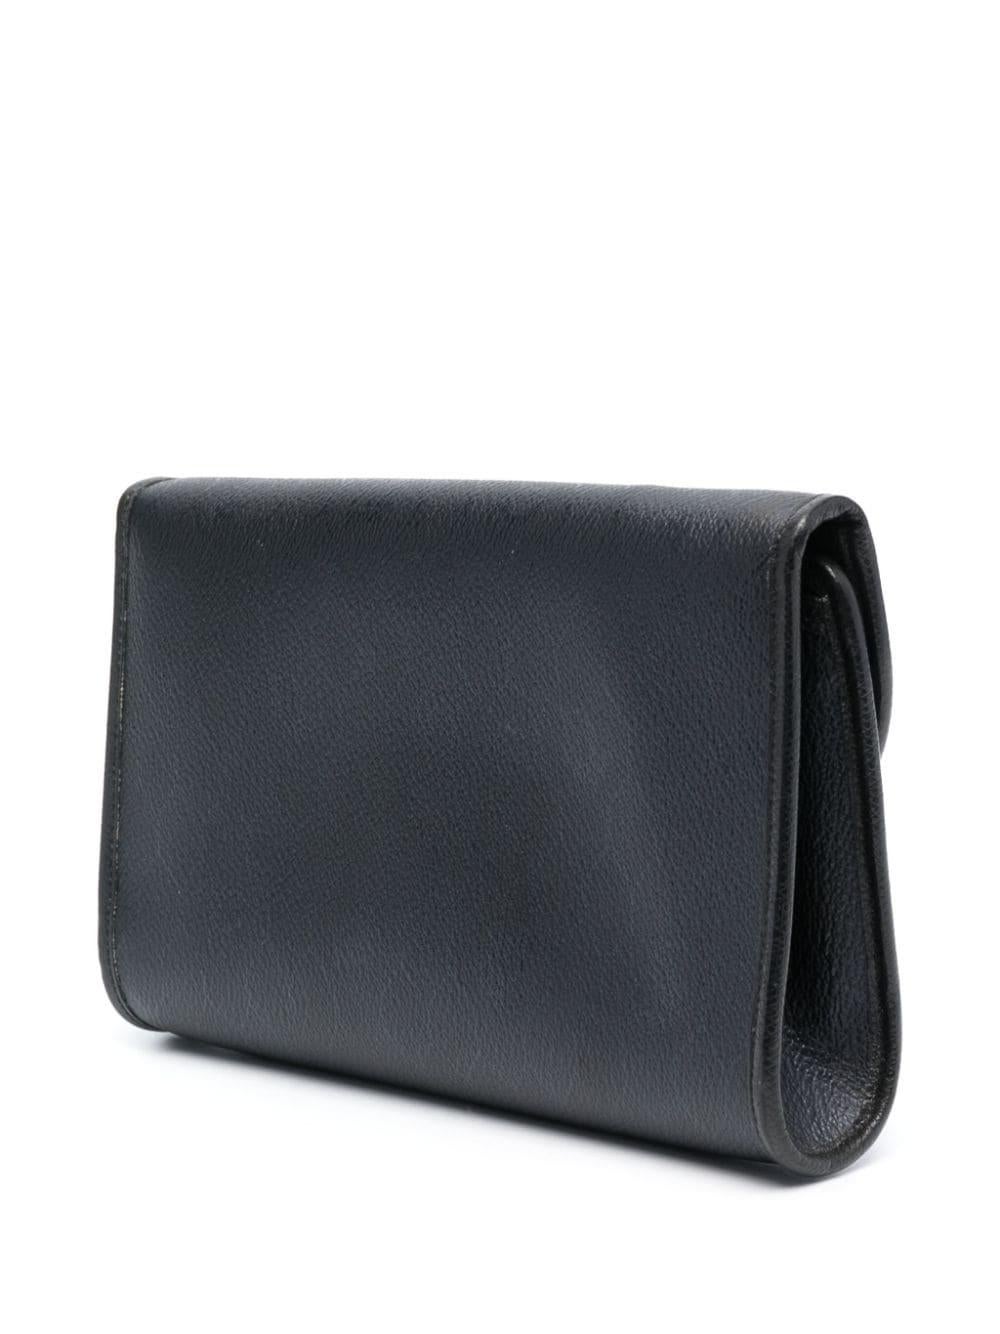 1980s Christian Dior Black Monogram Shoulder Bag 1